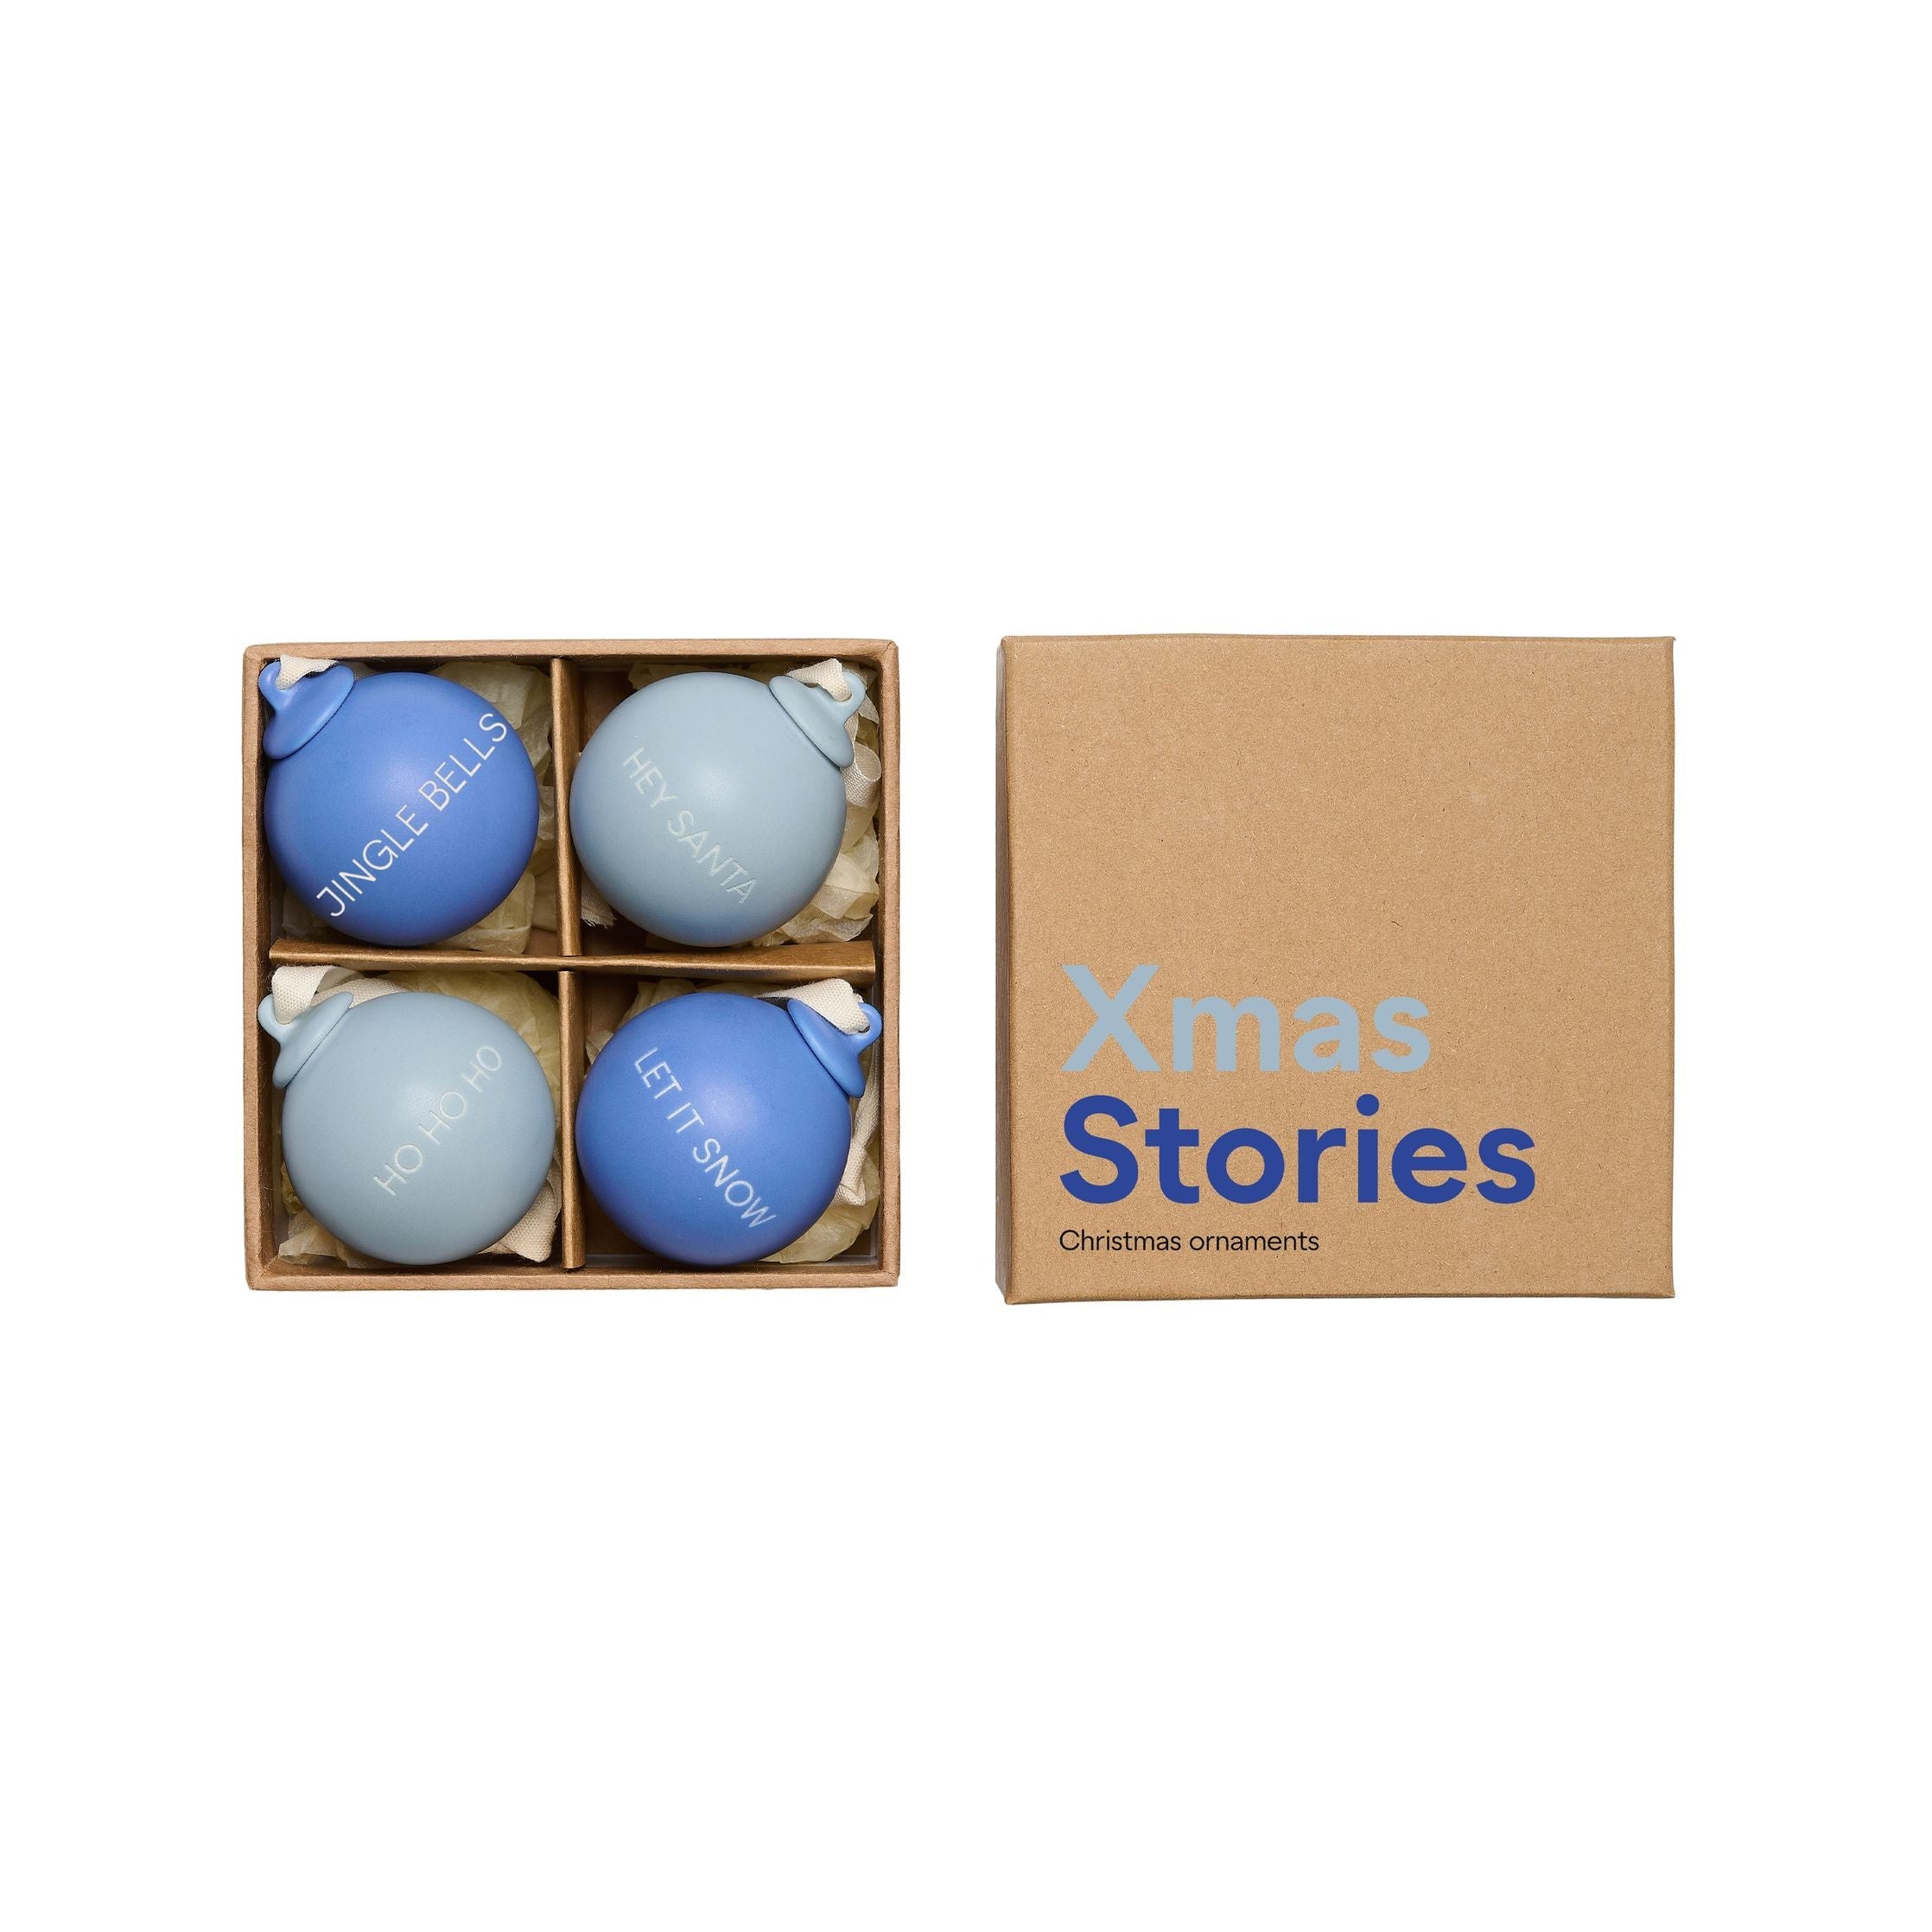 Letras de diseño Historias de Navidad Cachuelas de bola 40 mm (conjunto de 4 PC), azul cobalto/azul claro